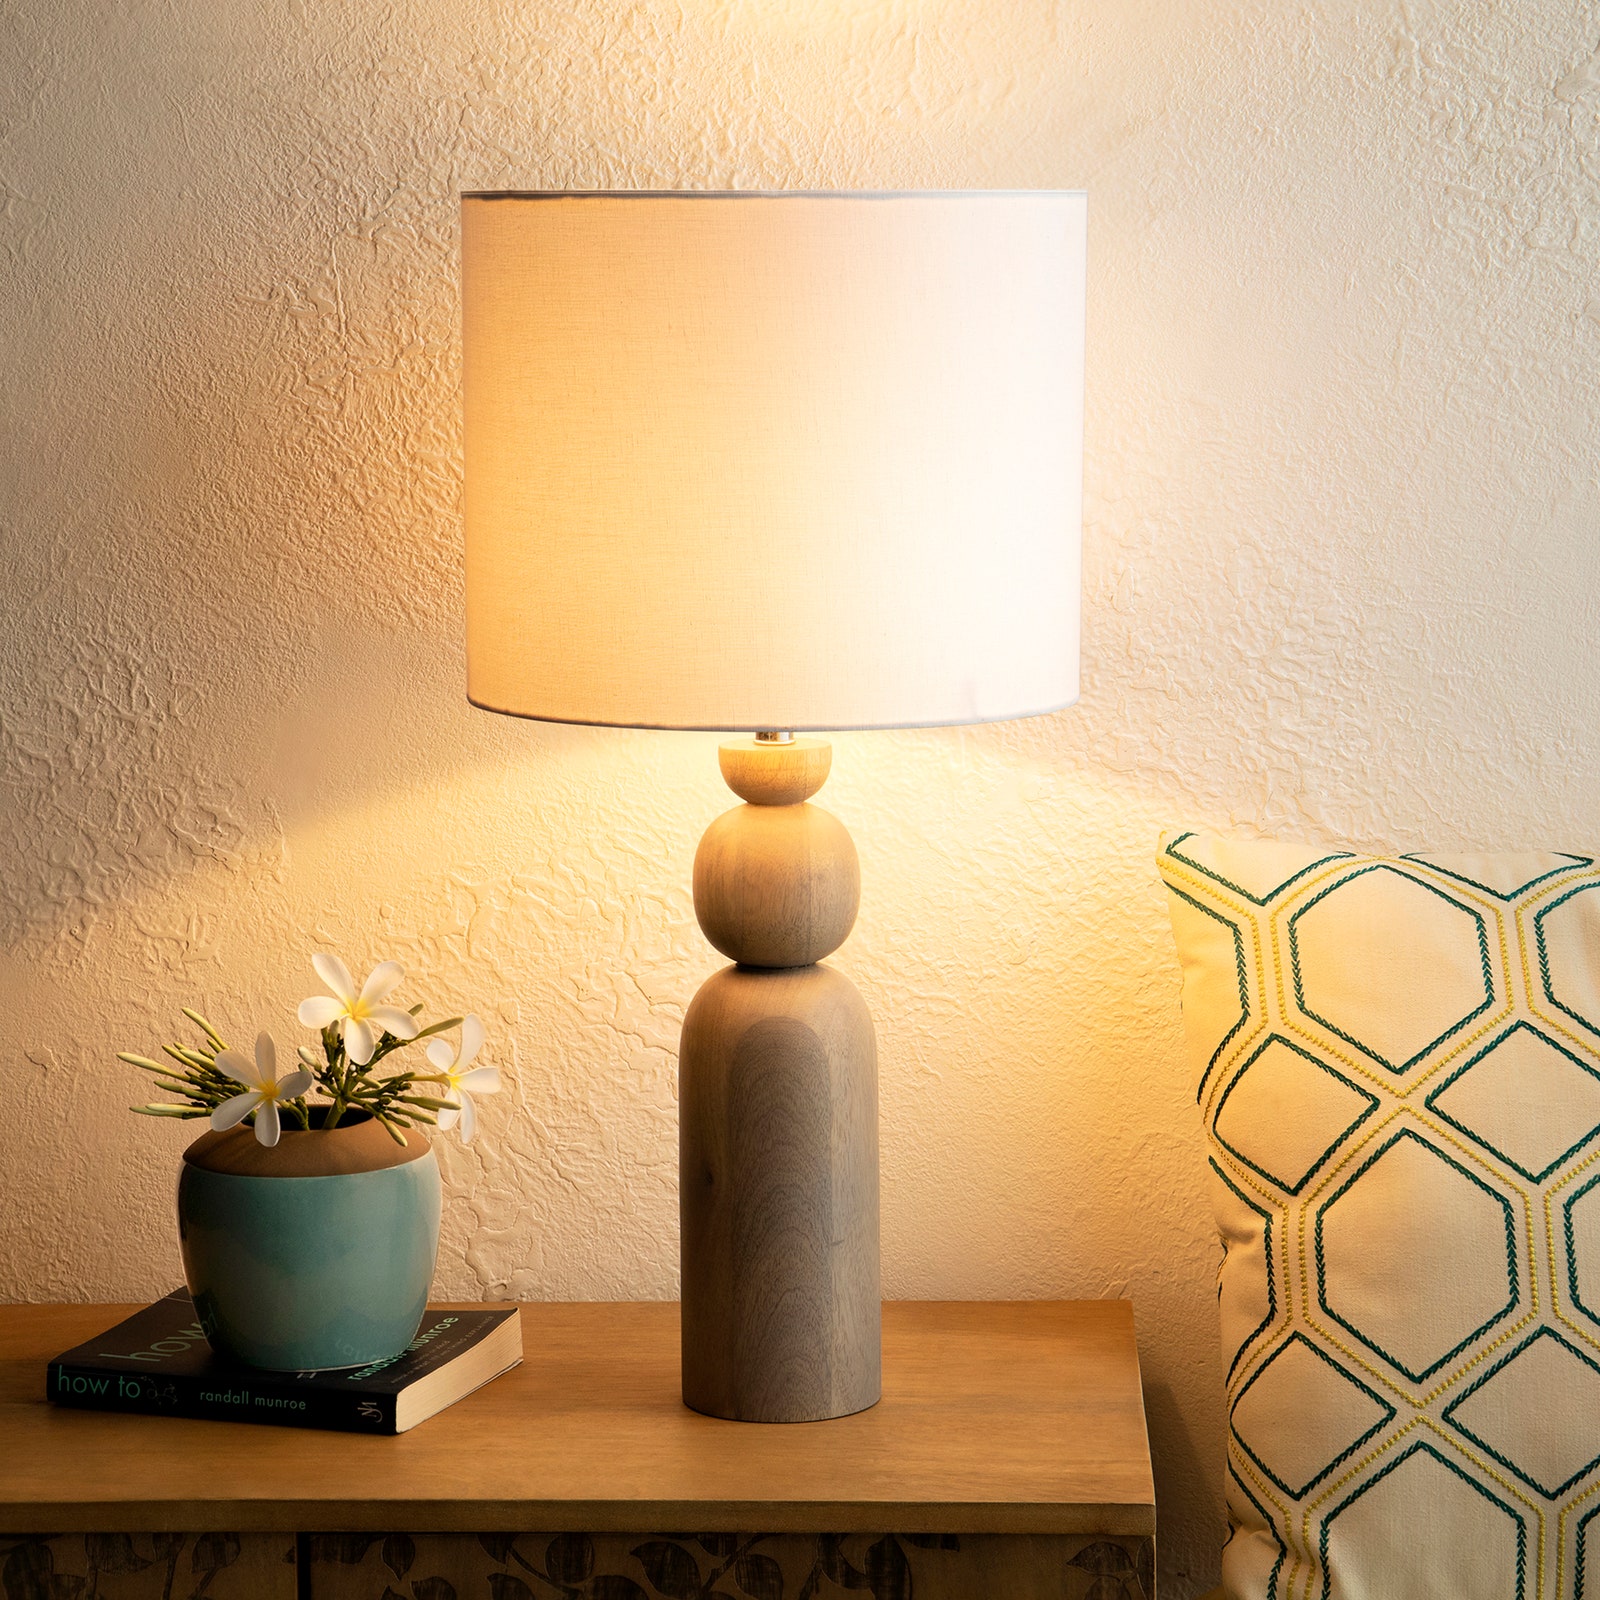 Chiếc đèn bàn màu be này với phong cách cổ điển nhẹ nhàng, không khó để kết hợp với tổng thể nội thất trong phòng. Nó được làm bằng gỗ xoài nên rất bền đẹp, chắc chắn, nguồn cung cấp ánh sáng cũng nhẹ nhàng, dễ chịu.